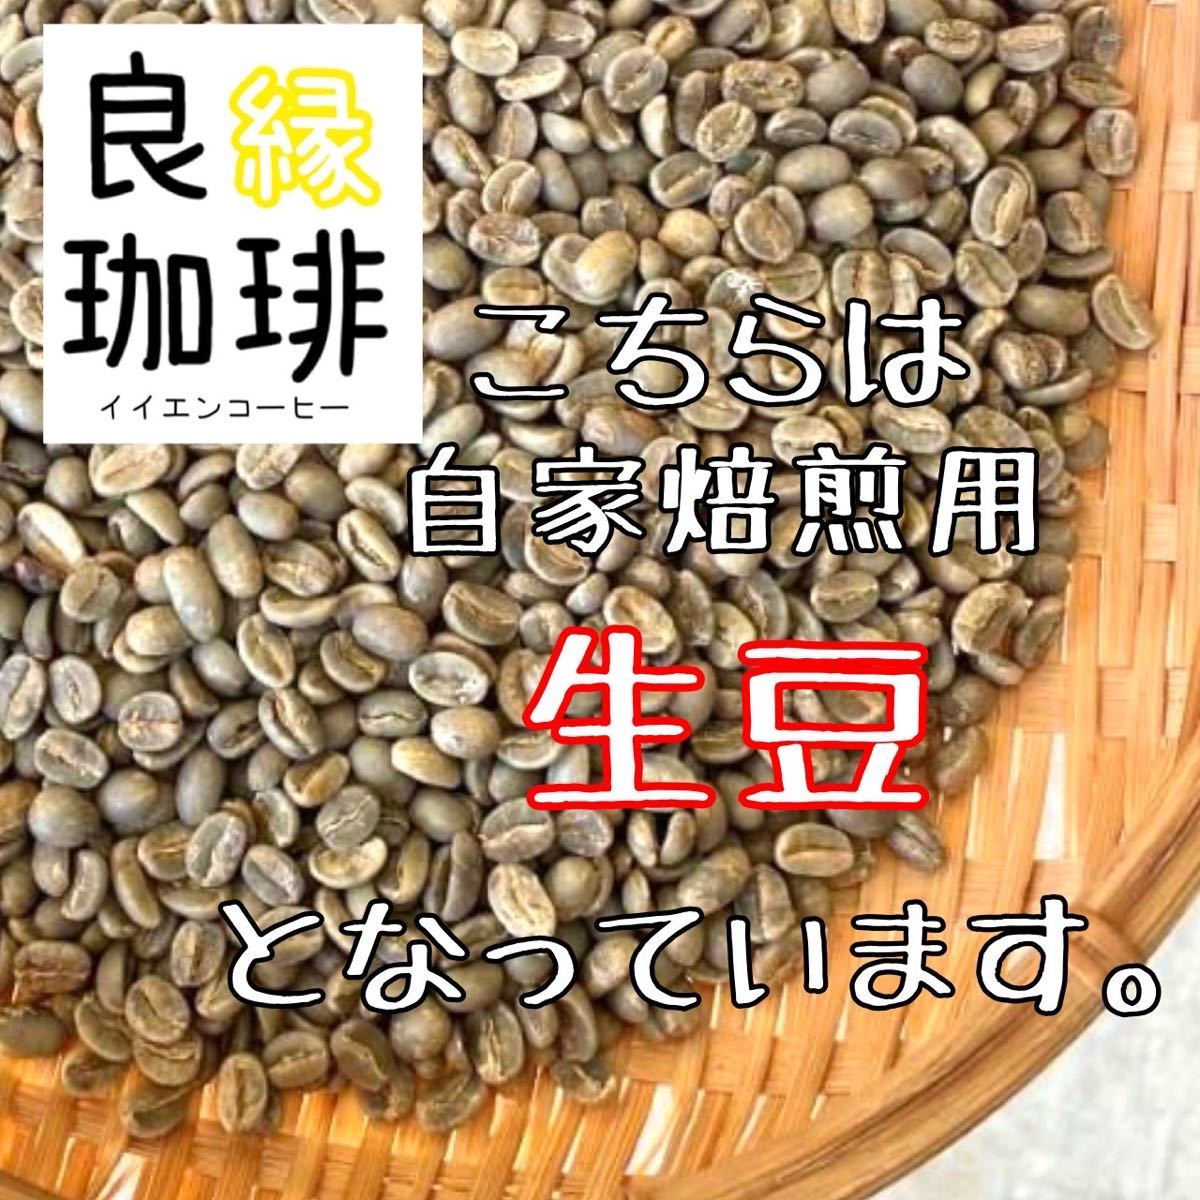 【大特価】生豆 ブラジル クィーンショコラ Qグレード 200g コーヒー豆 珈琲豆